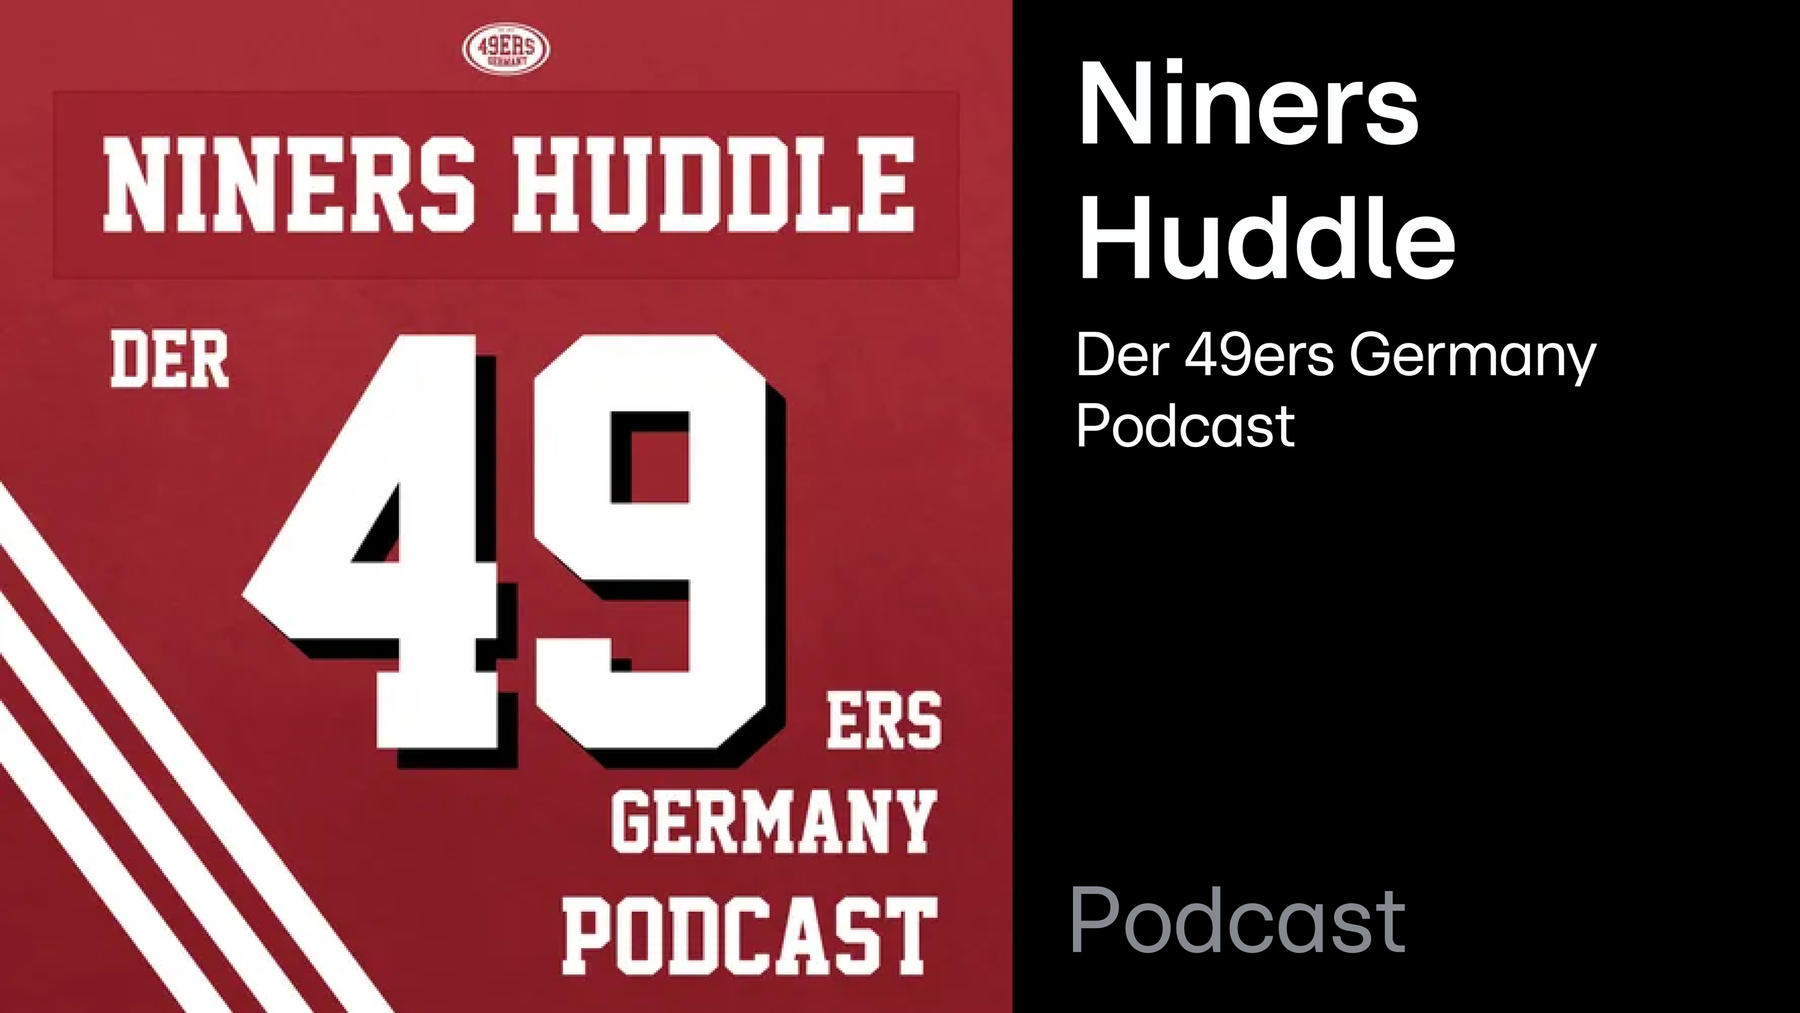 Podcast: Niners Huddle - Der 49ers Germany Podcast